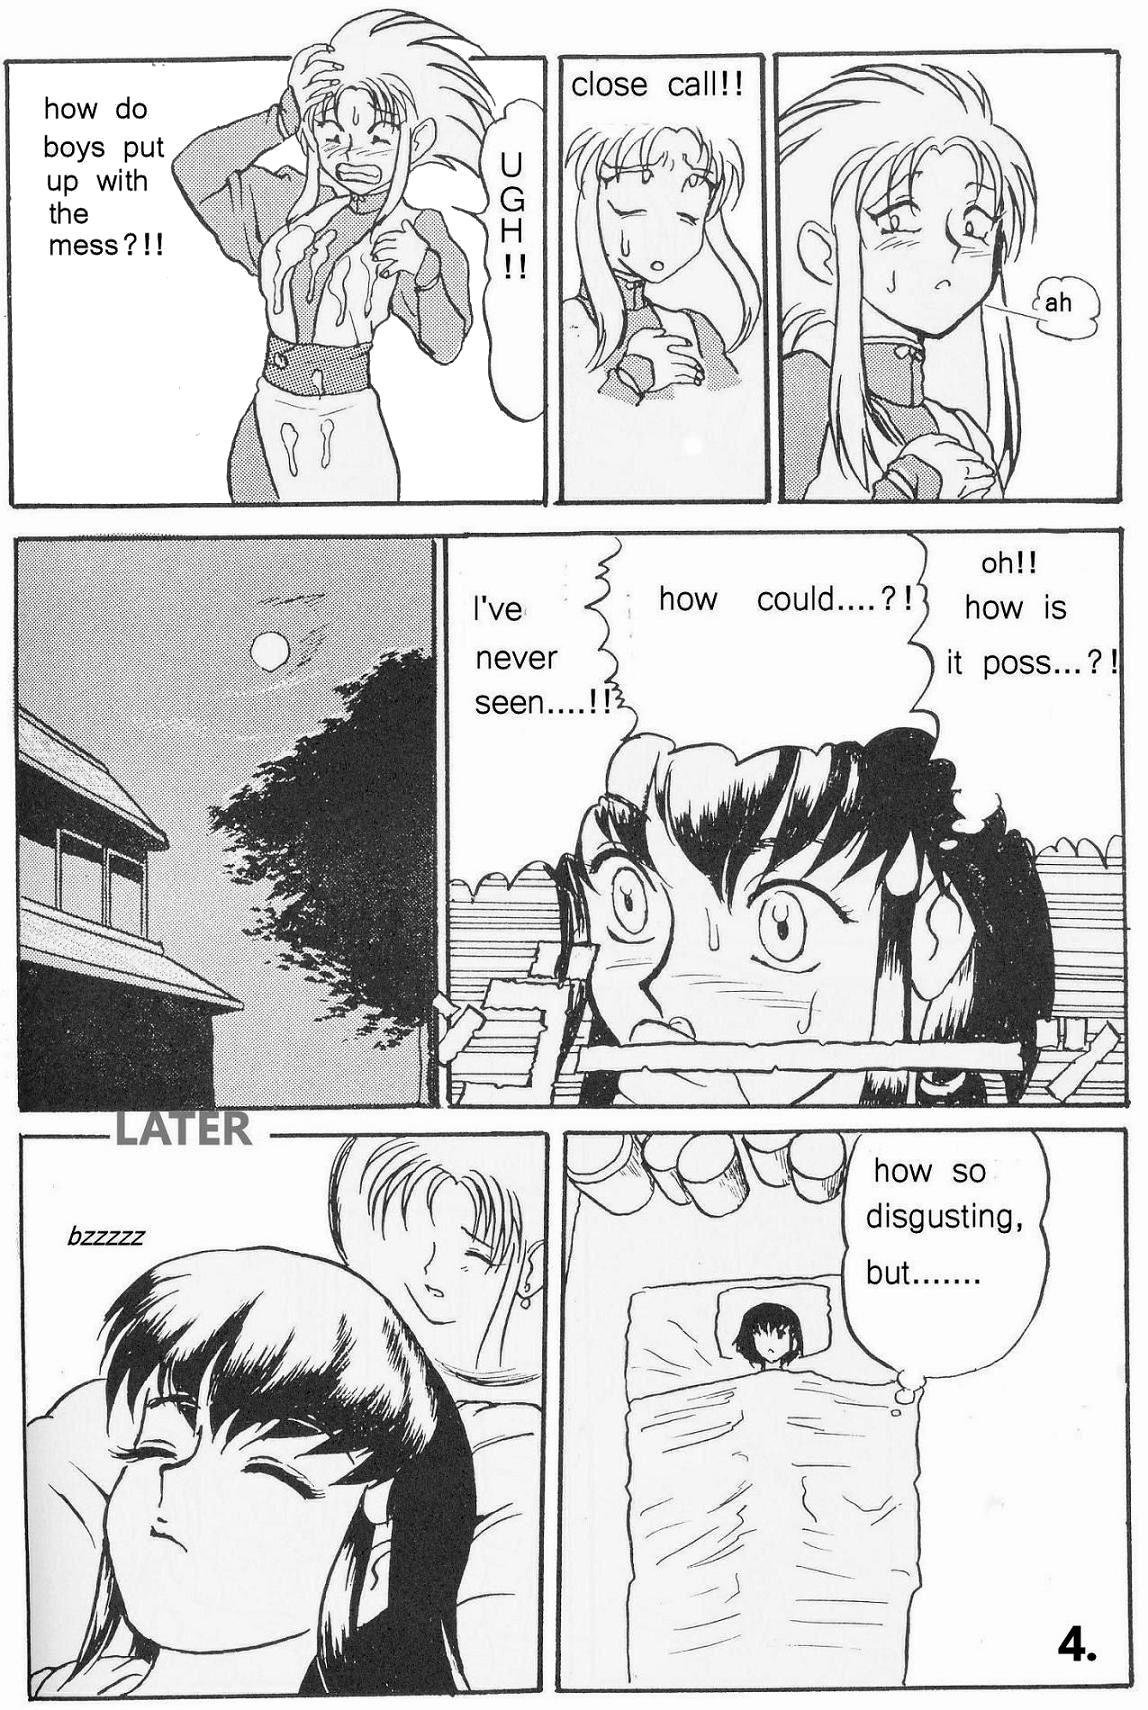 Perfect Teen Tenchi Muyo!! Hard Times, Long Nights! - Tenchi muyo Teen Fuck - Page 5